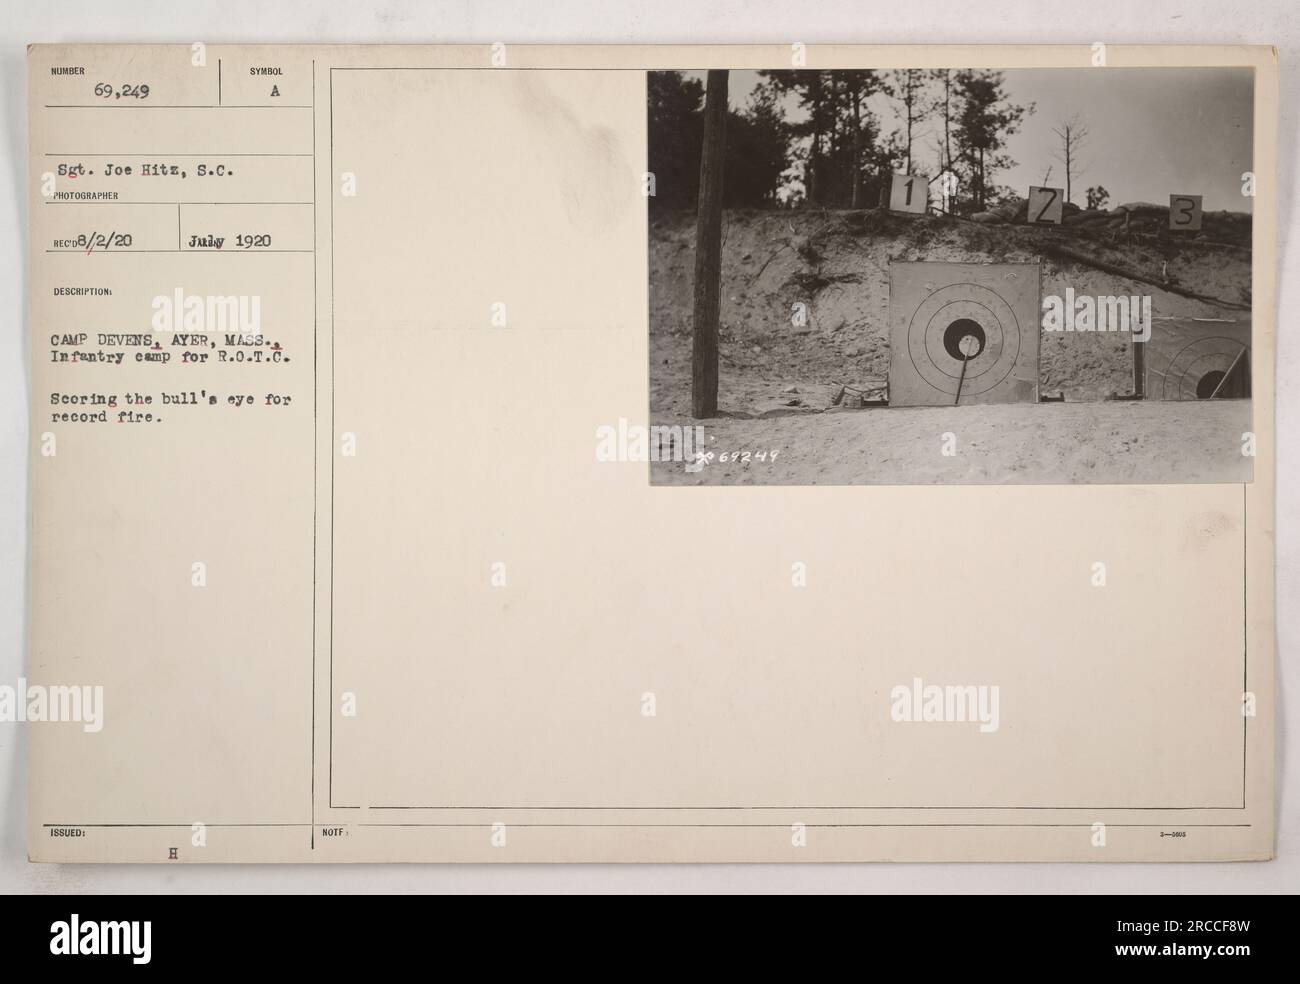 Soldati che partecipano ad esercitazioni di addestramento a Camp Devens, Ayer, Massachusetts. Il sergente Joe Hitz viene visto segnare un occhio di bue durante un evento da record. La foto è stata scattata nel luglio 1920. I soldati raffigurati nell'immagine fanno parte del programma R.O.T.C.. Foto Stock